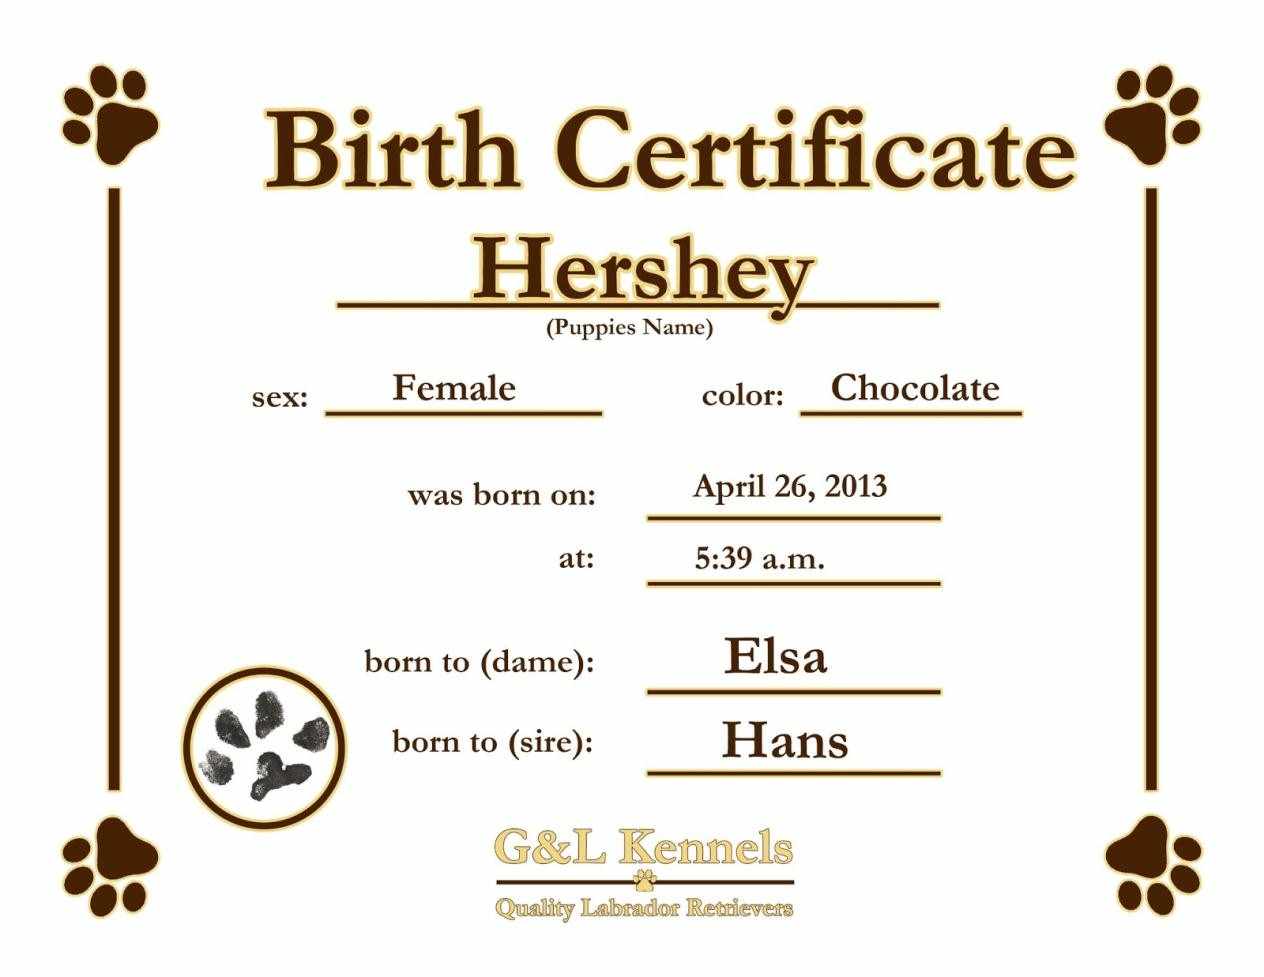 Are Birth Certificates Free